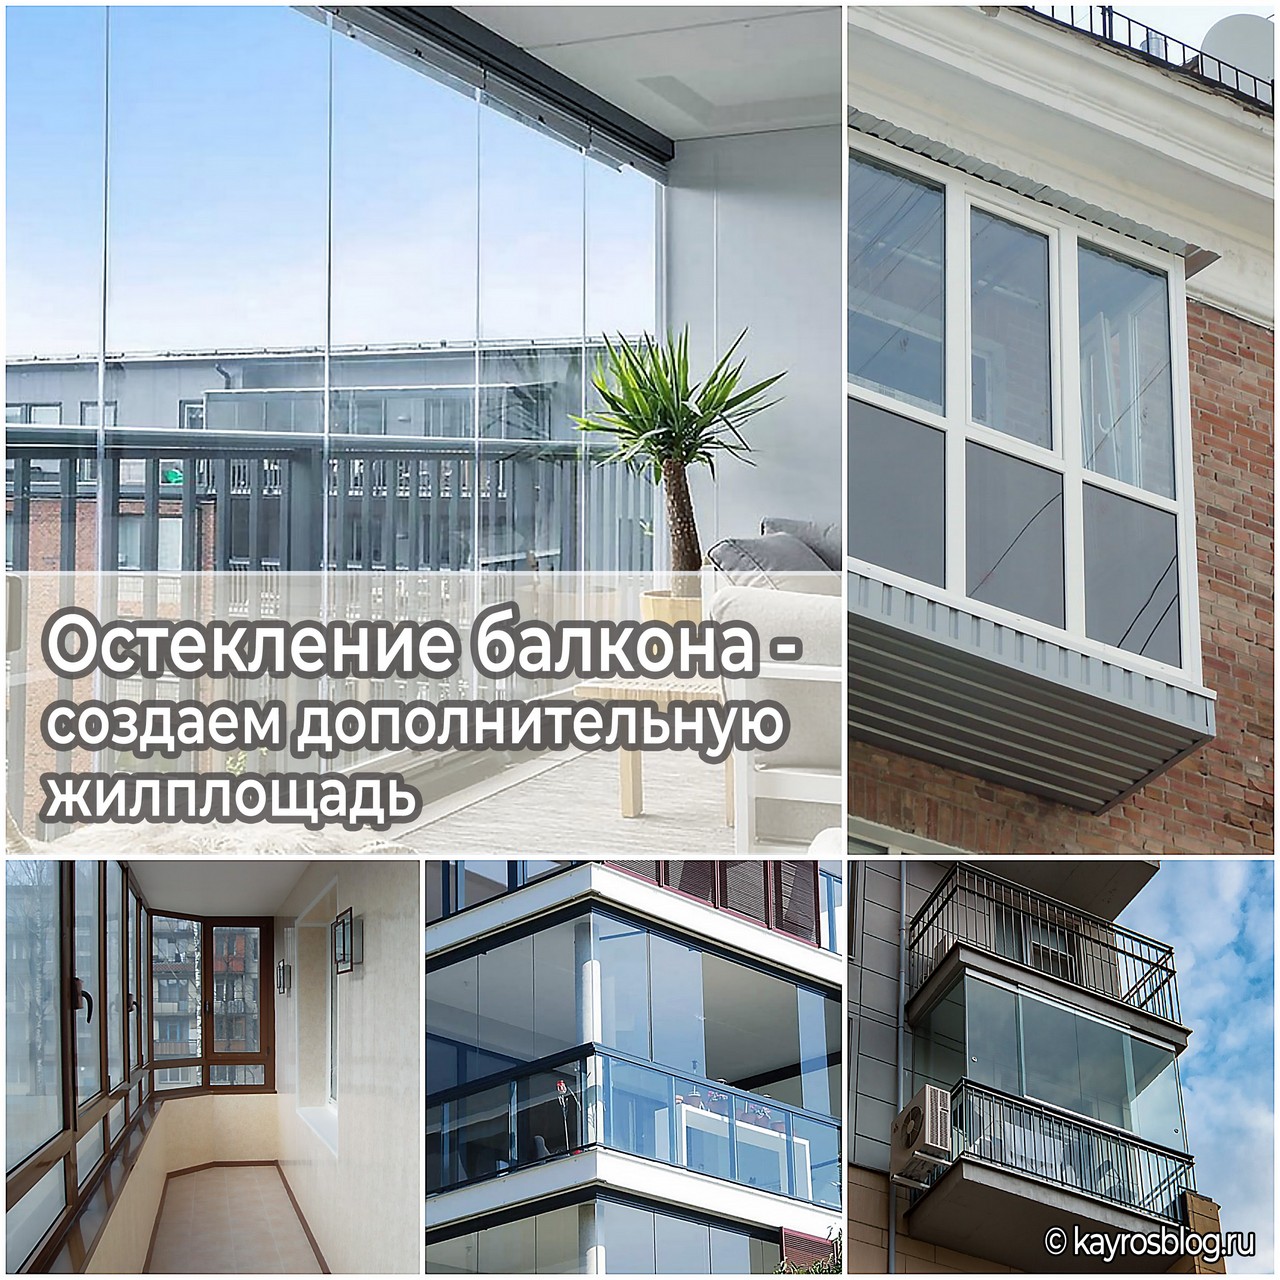 Остекление балкона - создаем дополнительную жилплощадь